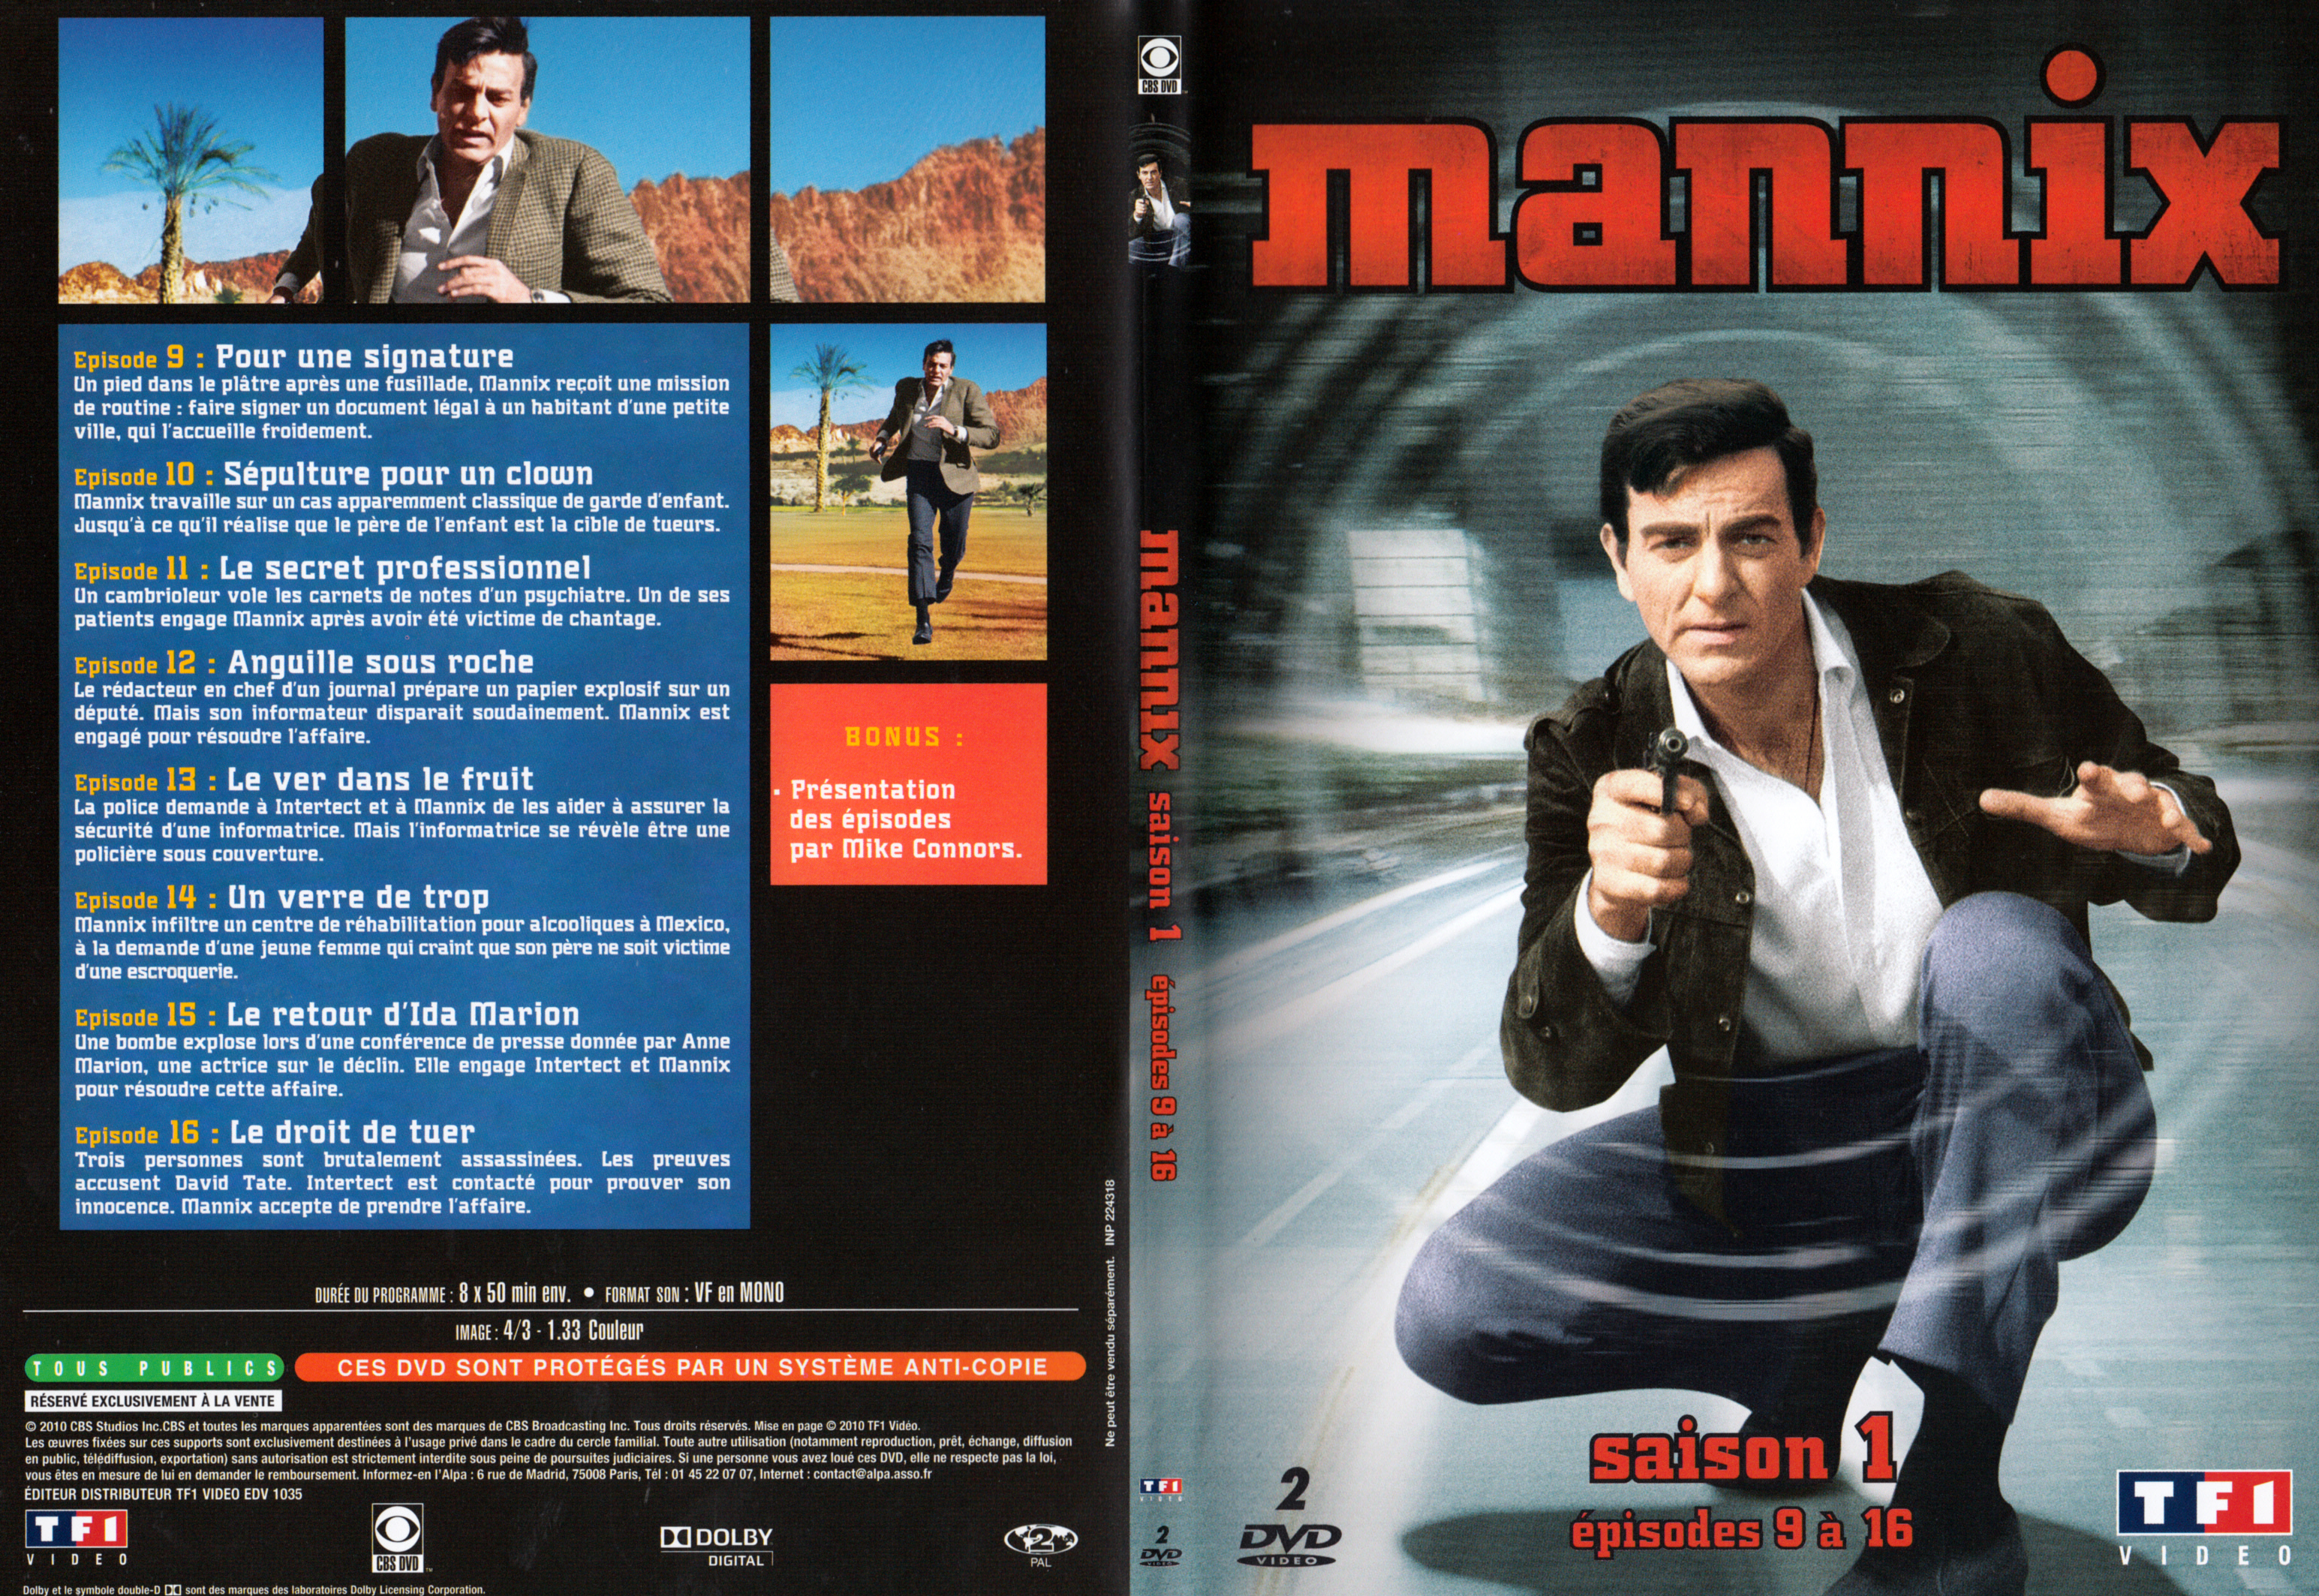 Jaquette DVD Mannix Saison 1 Ep 9-16